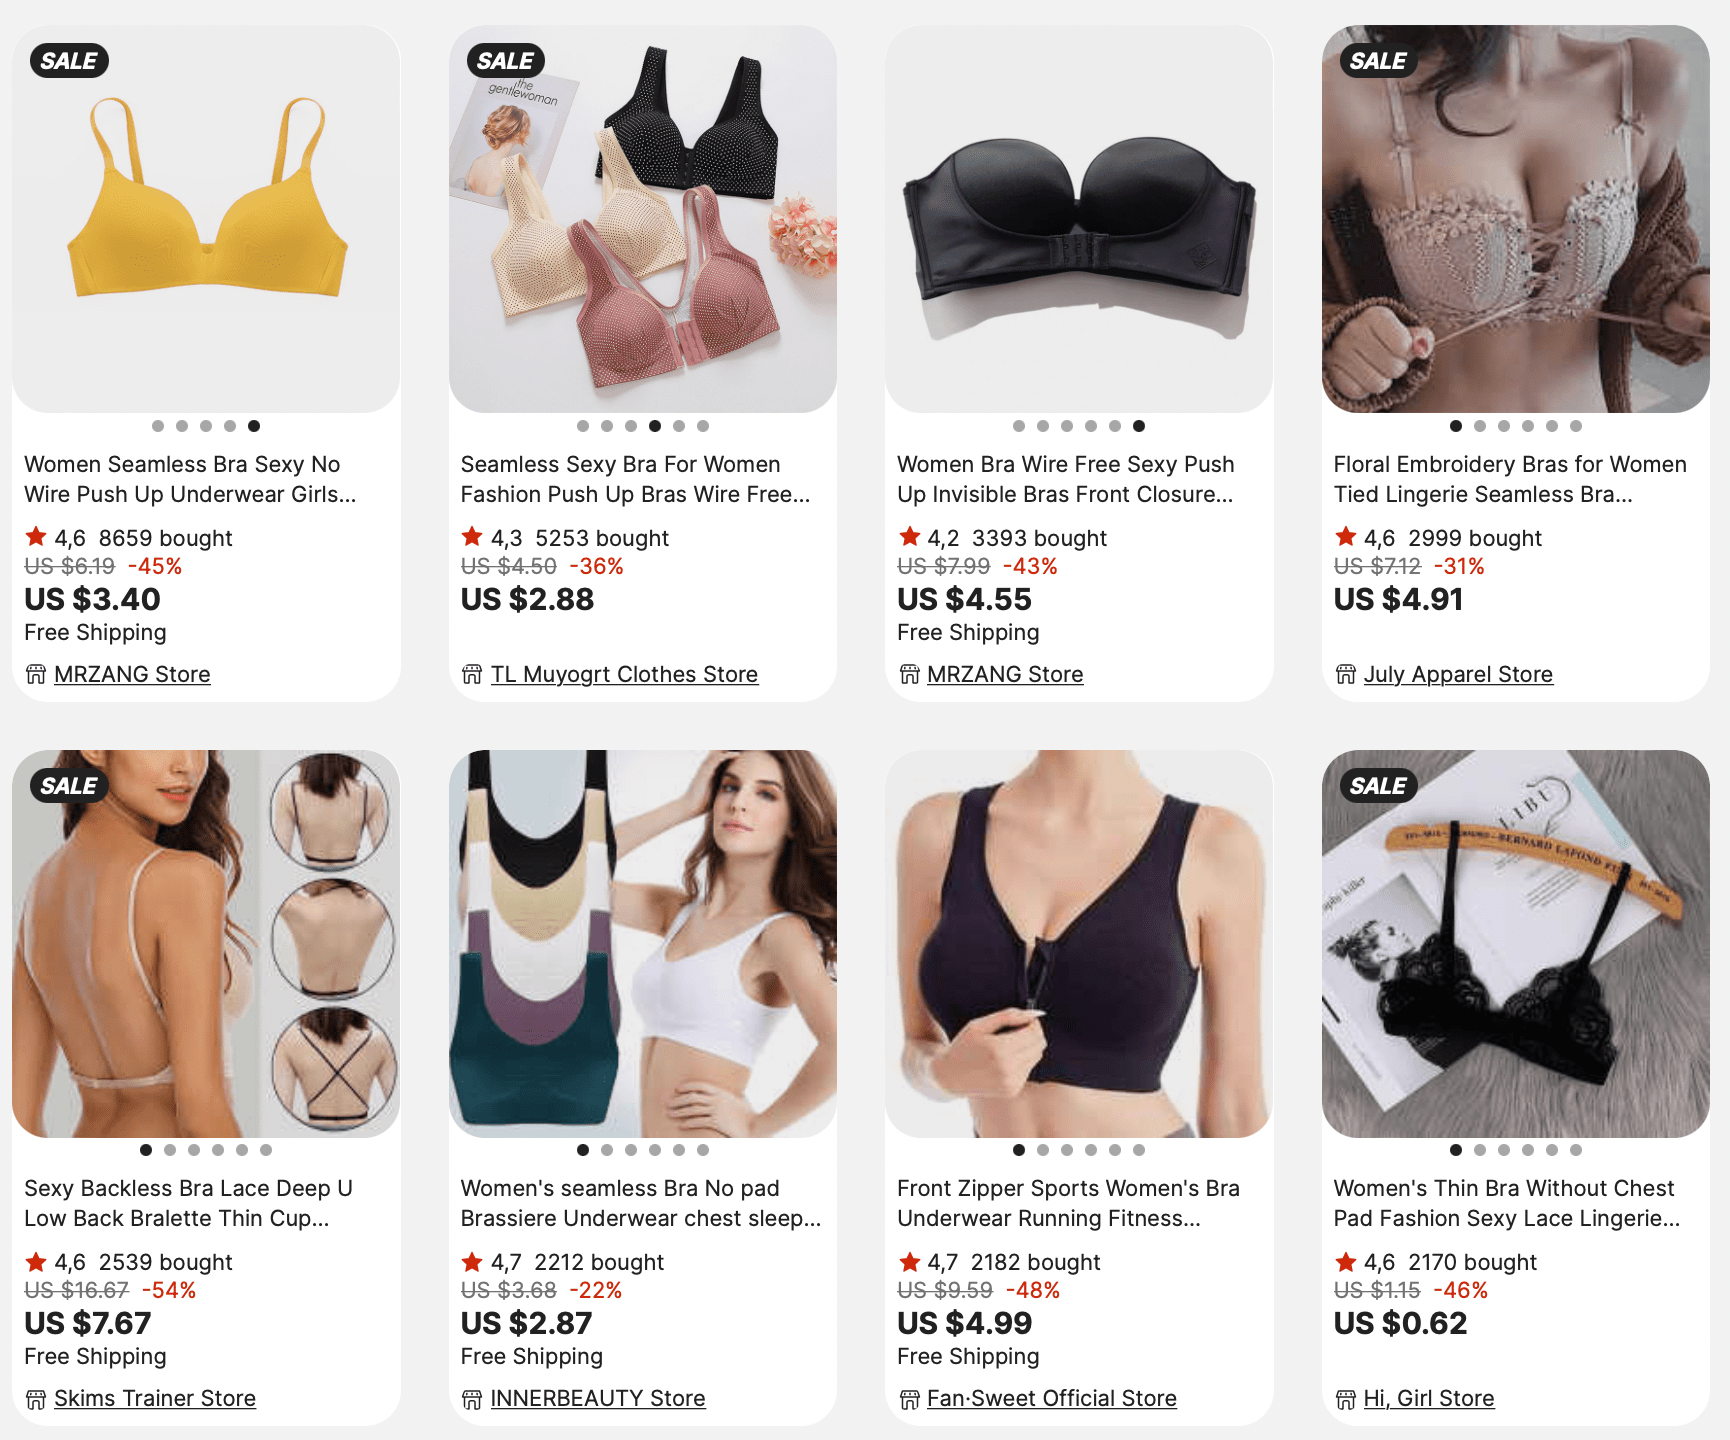 Dropship Calvin Klein Underwear Women Underwear to Sell Online at